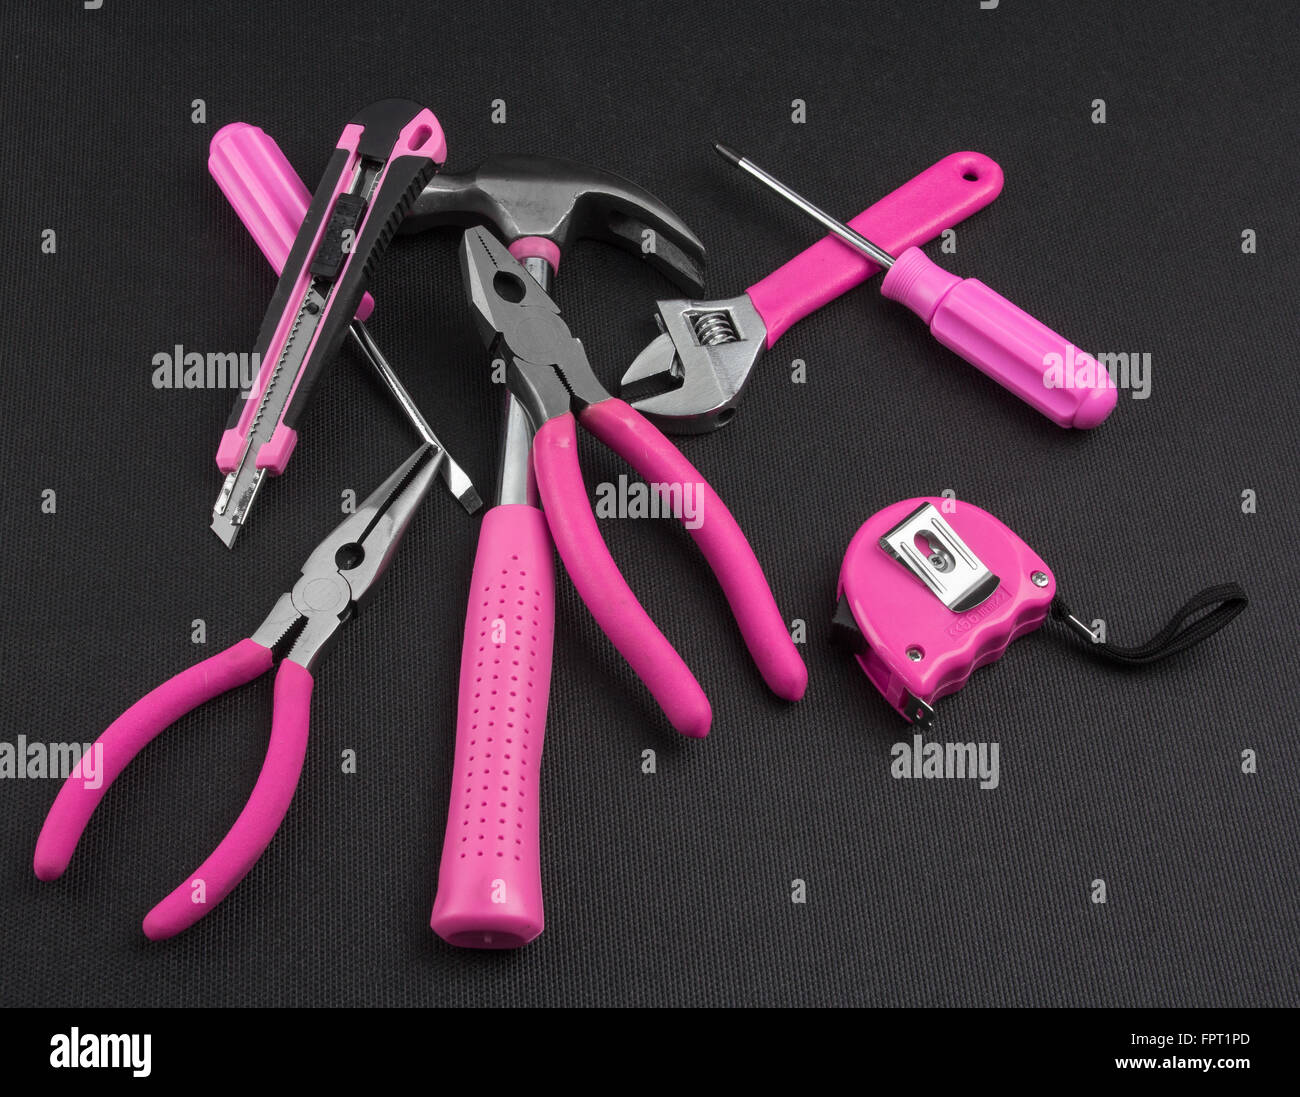 Stapel von praktischen Tools mit rosa Griffe Stockfoto